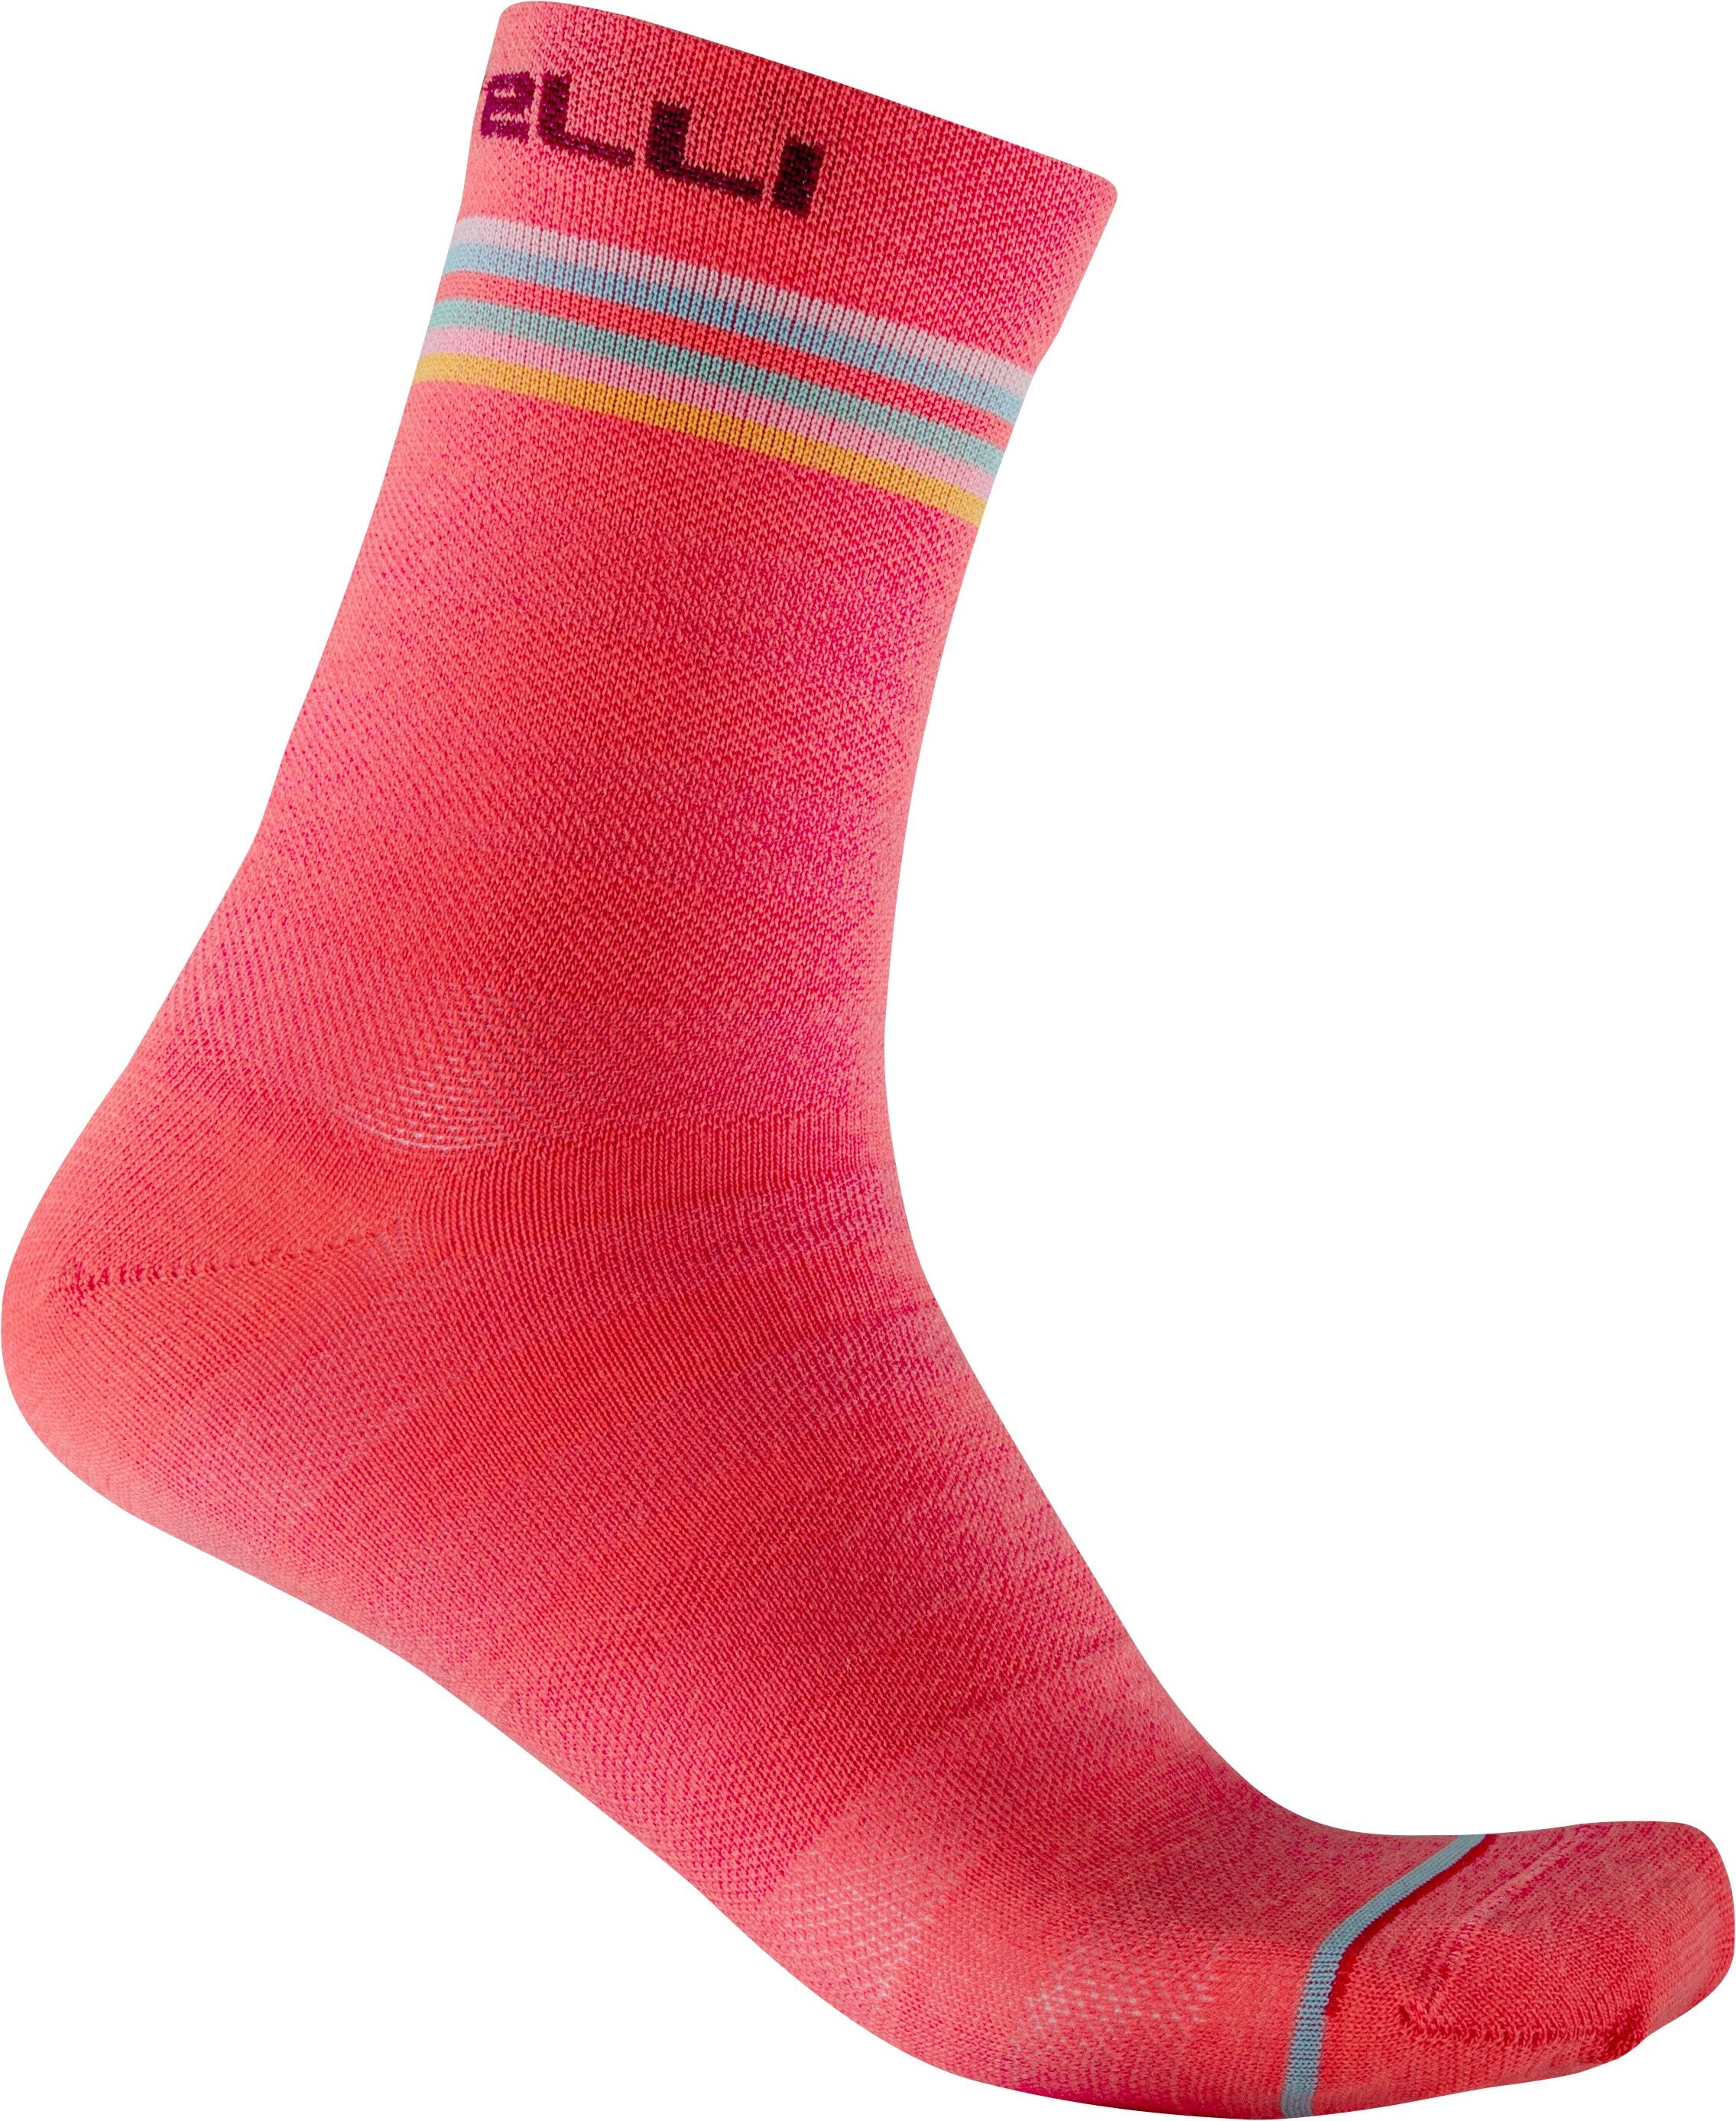 Castelli Go 15 Sock - Cycling socks - Women's